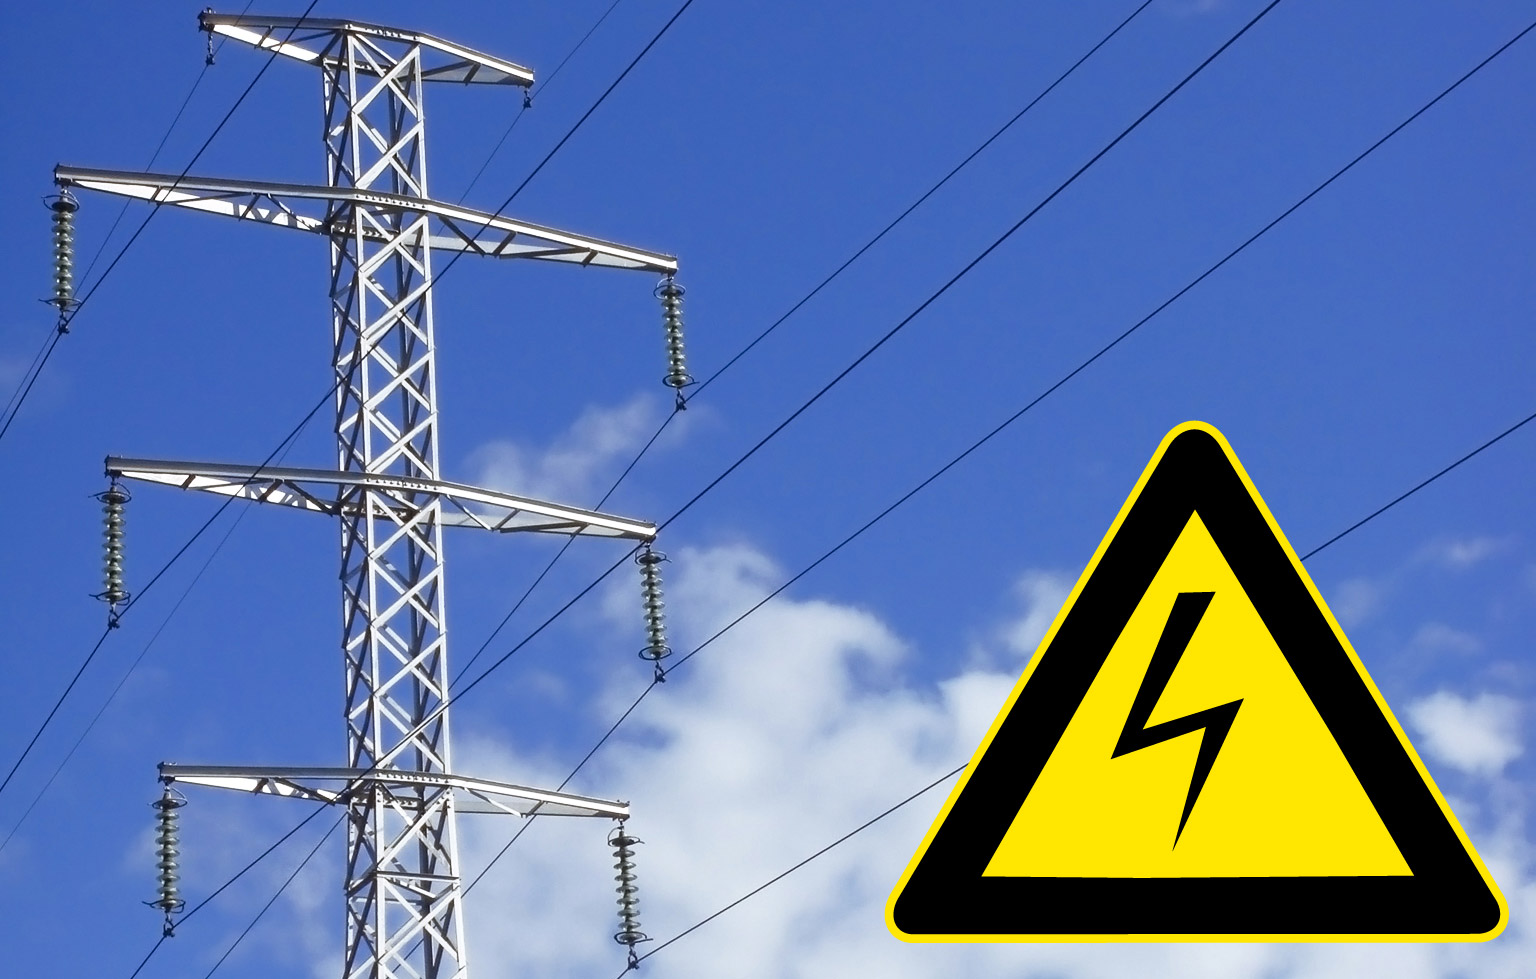 Памятка об опасности приближения к электроустановкам и несанкционированных работ в охранных зонах ЛЭП.